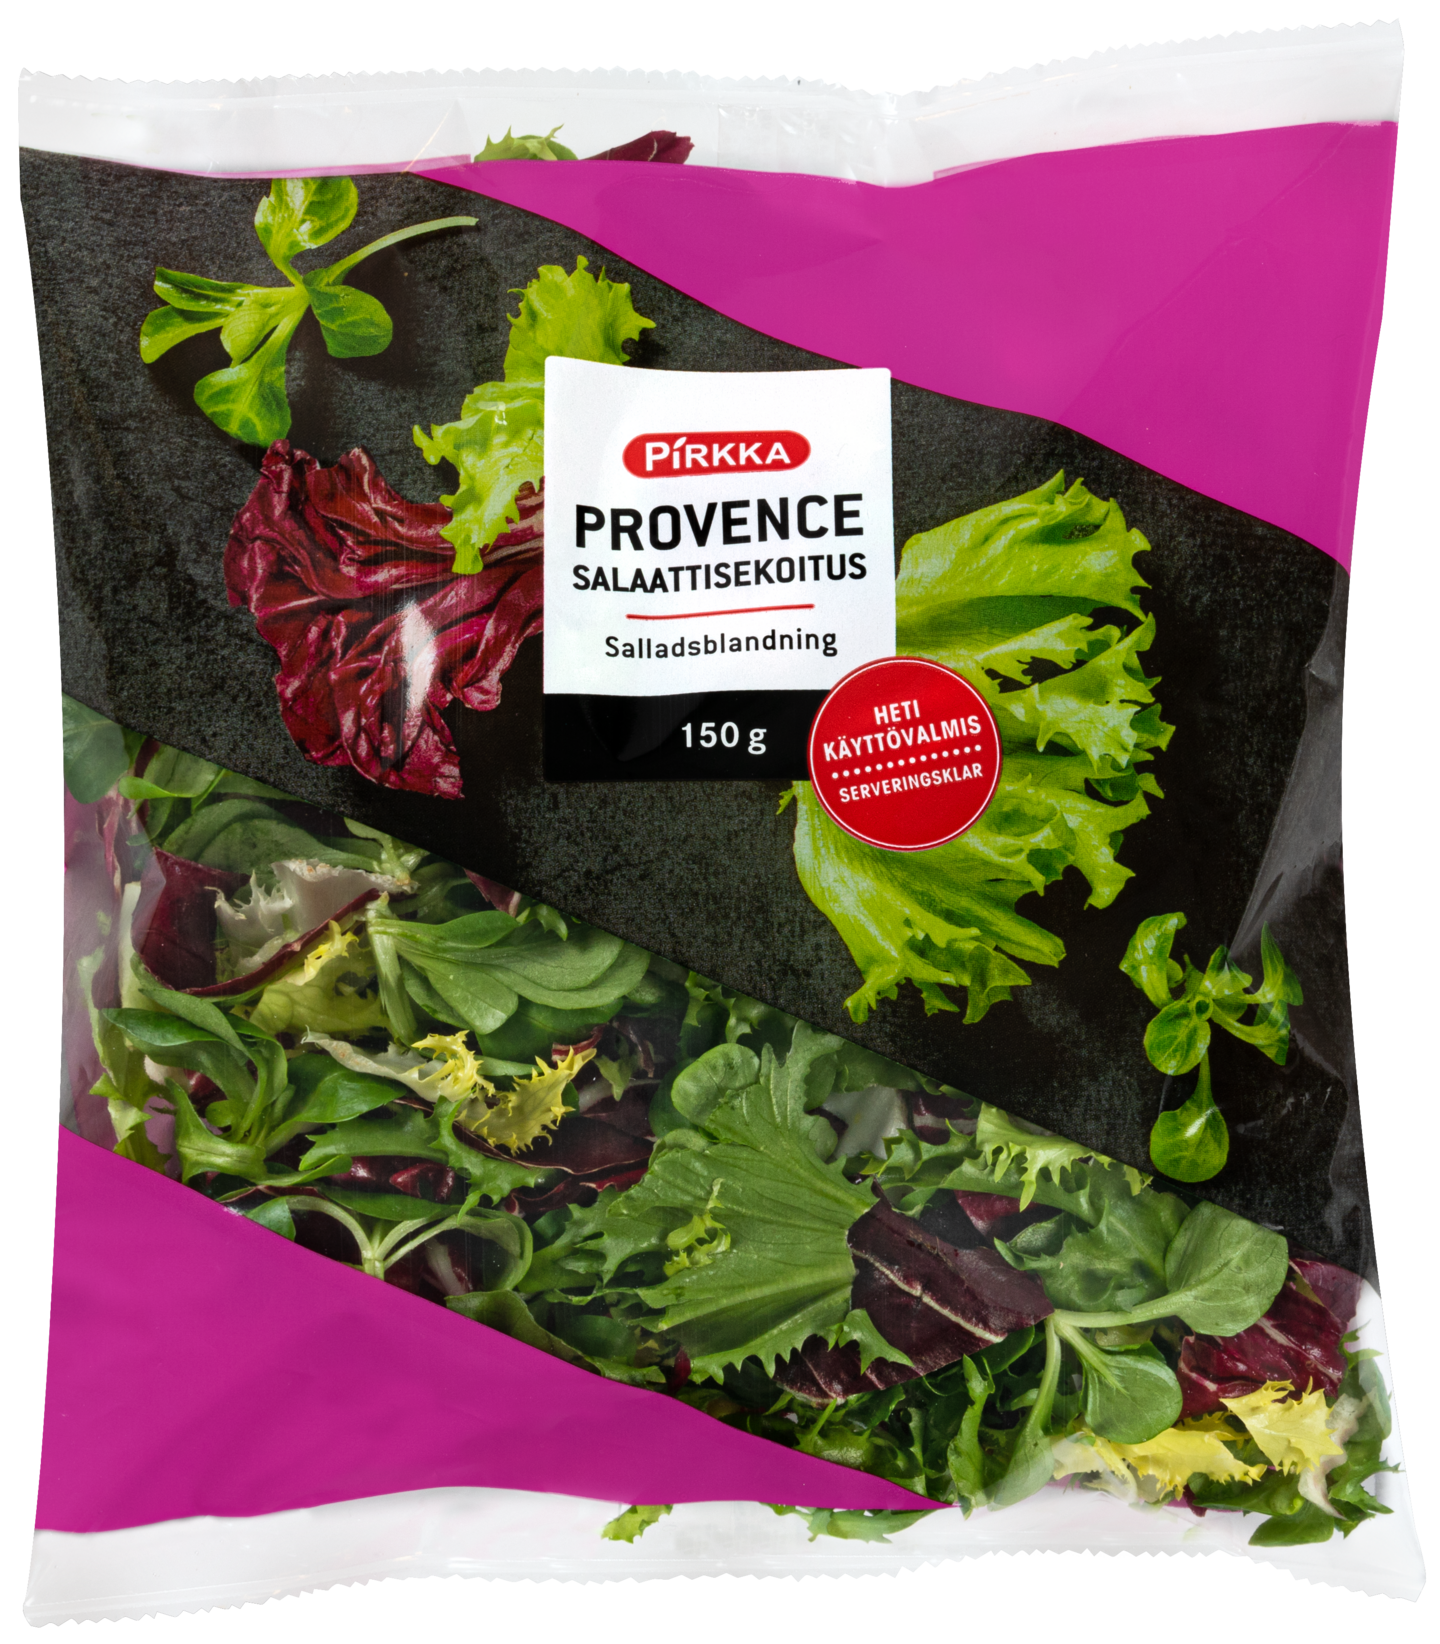 Pirkka Provence salaattisekoitus 150 g | K-Ruoka Verkkokauppa